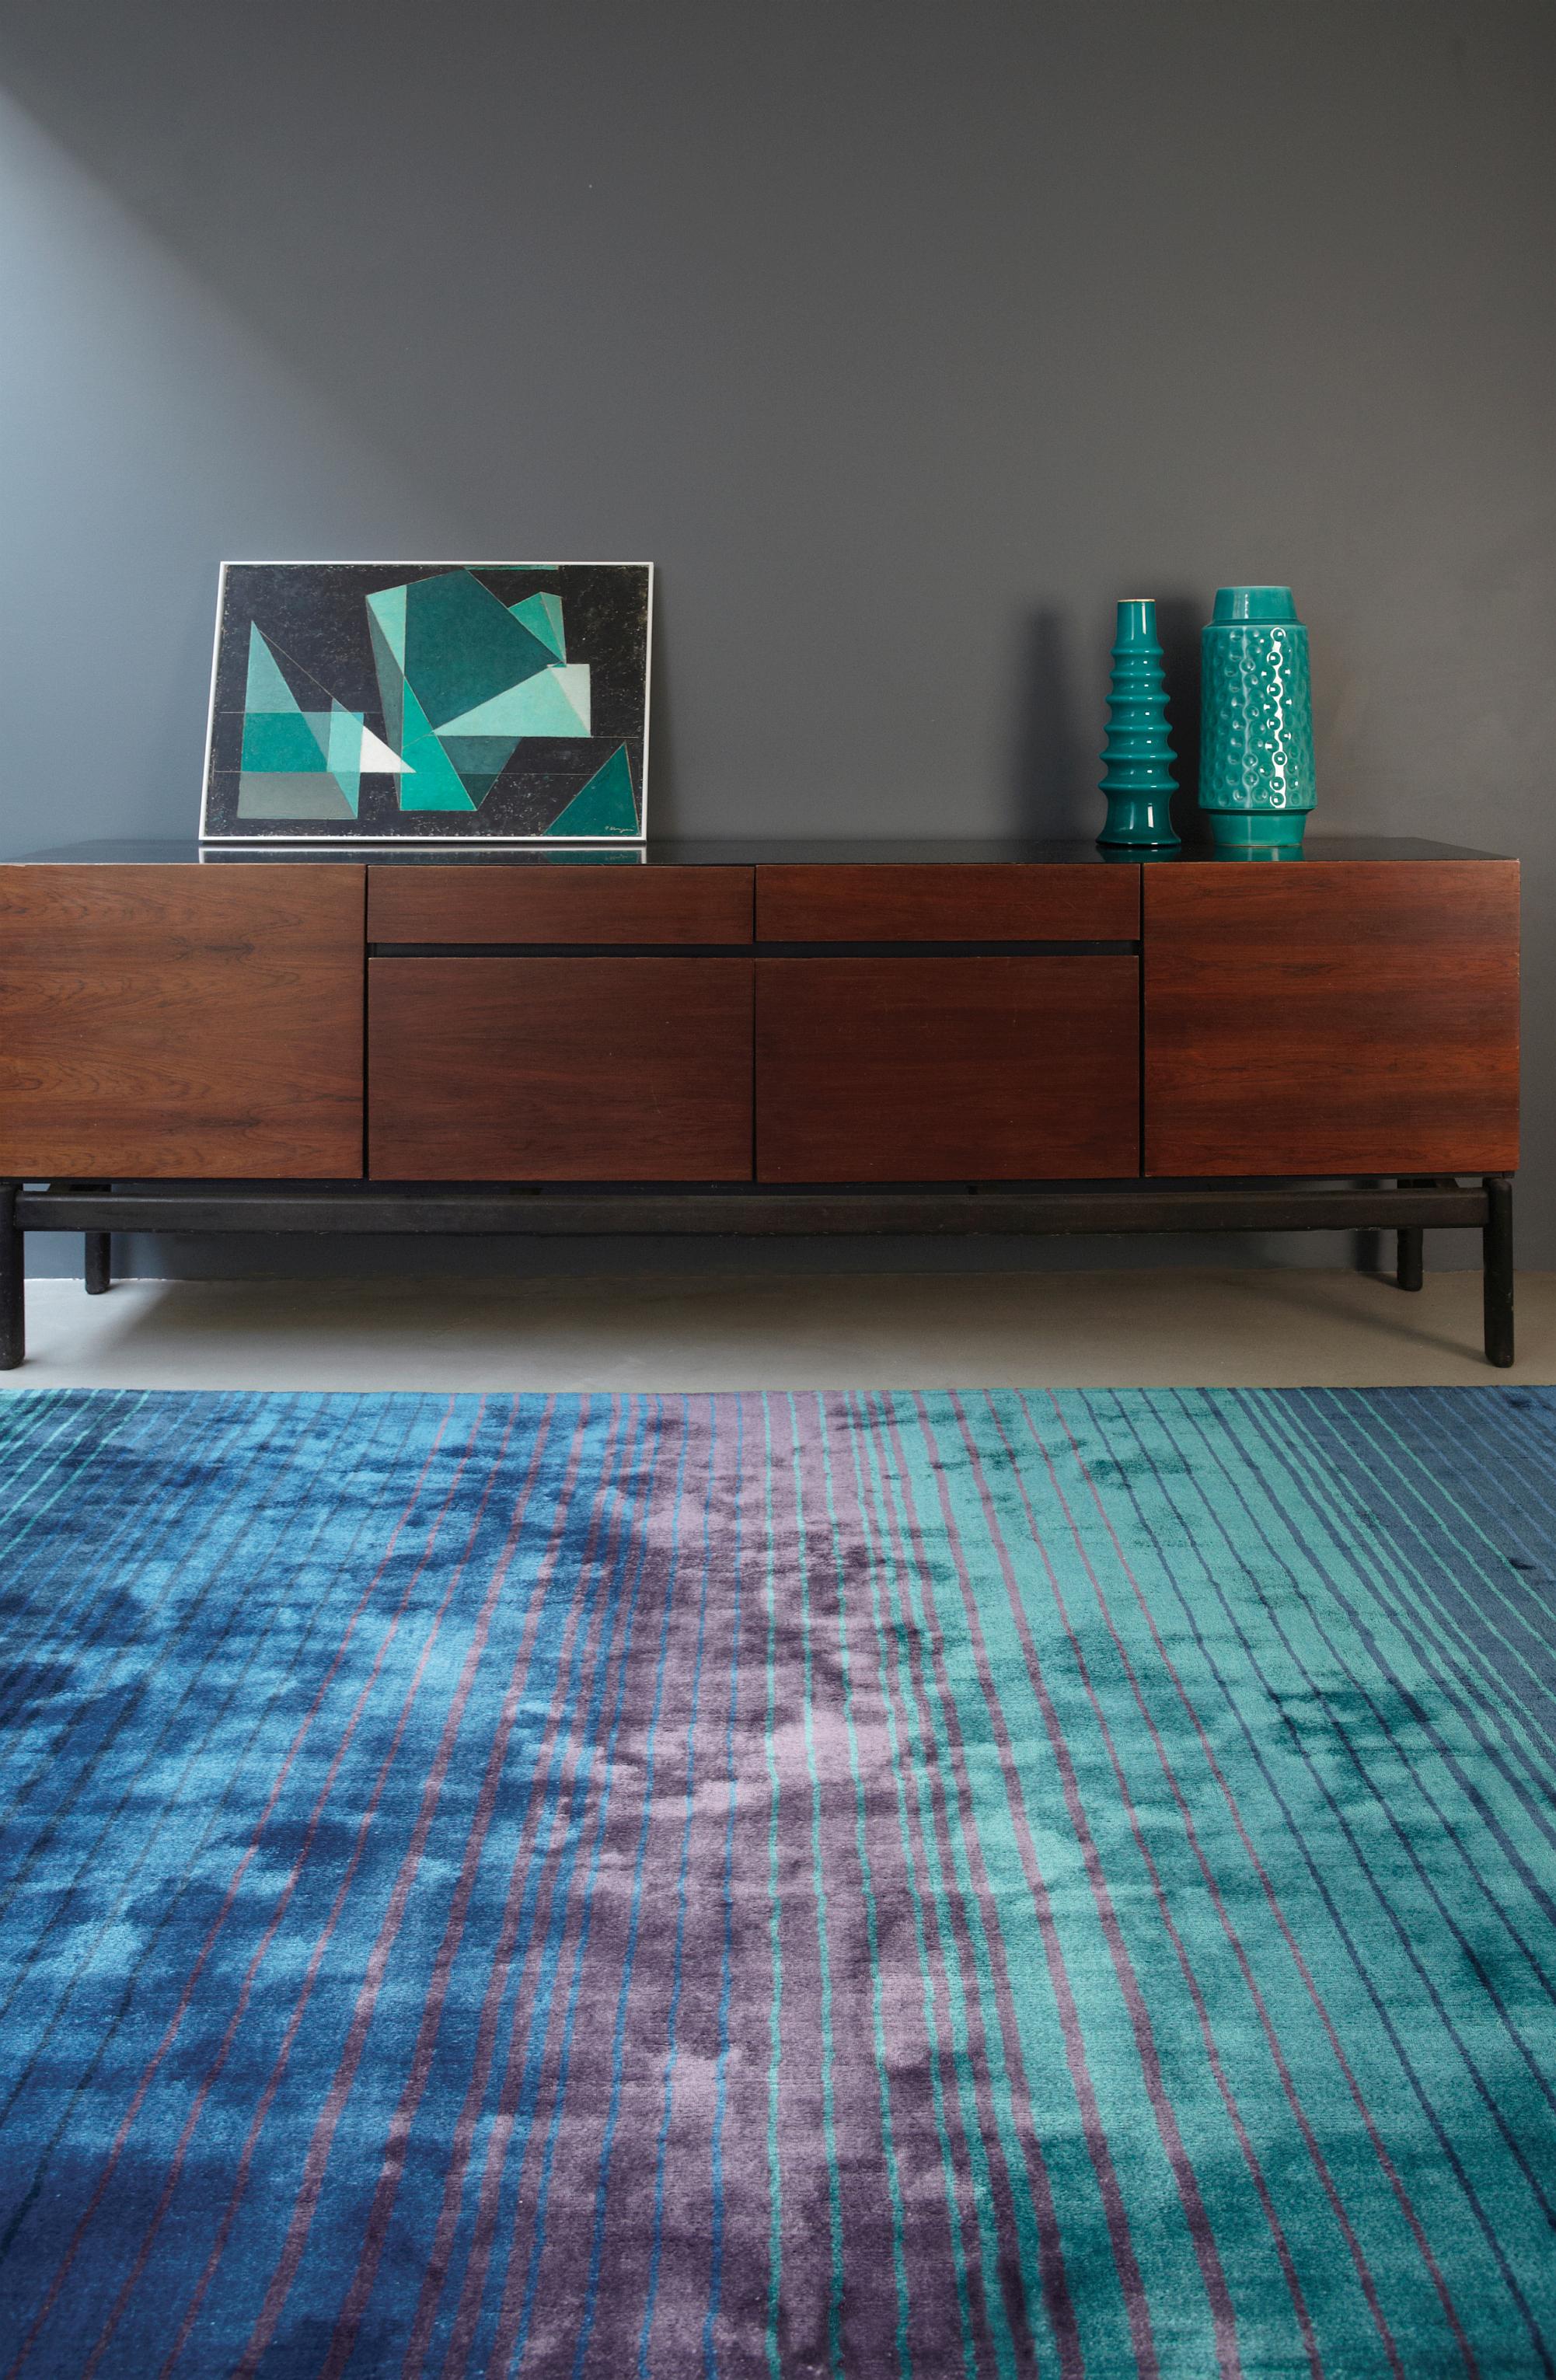 Moderner Teppich für modernes Wohnen #wohnzimmerteppich ©KadimaDesign